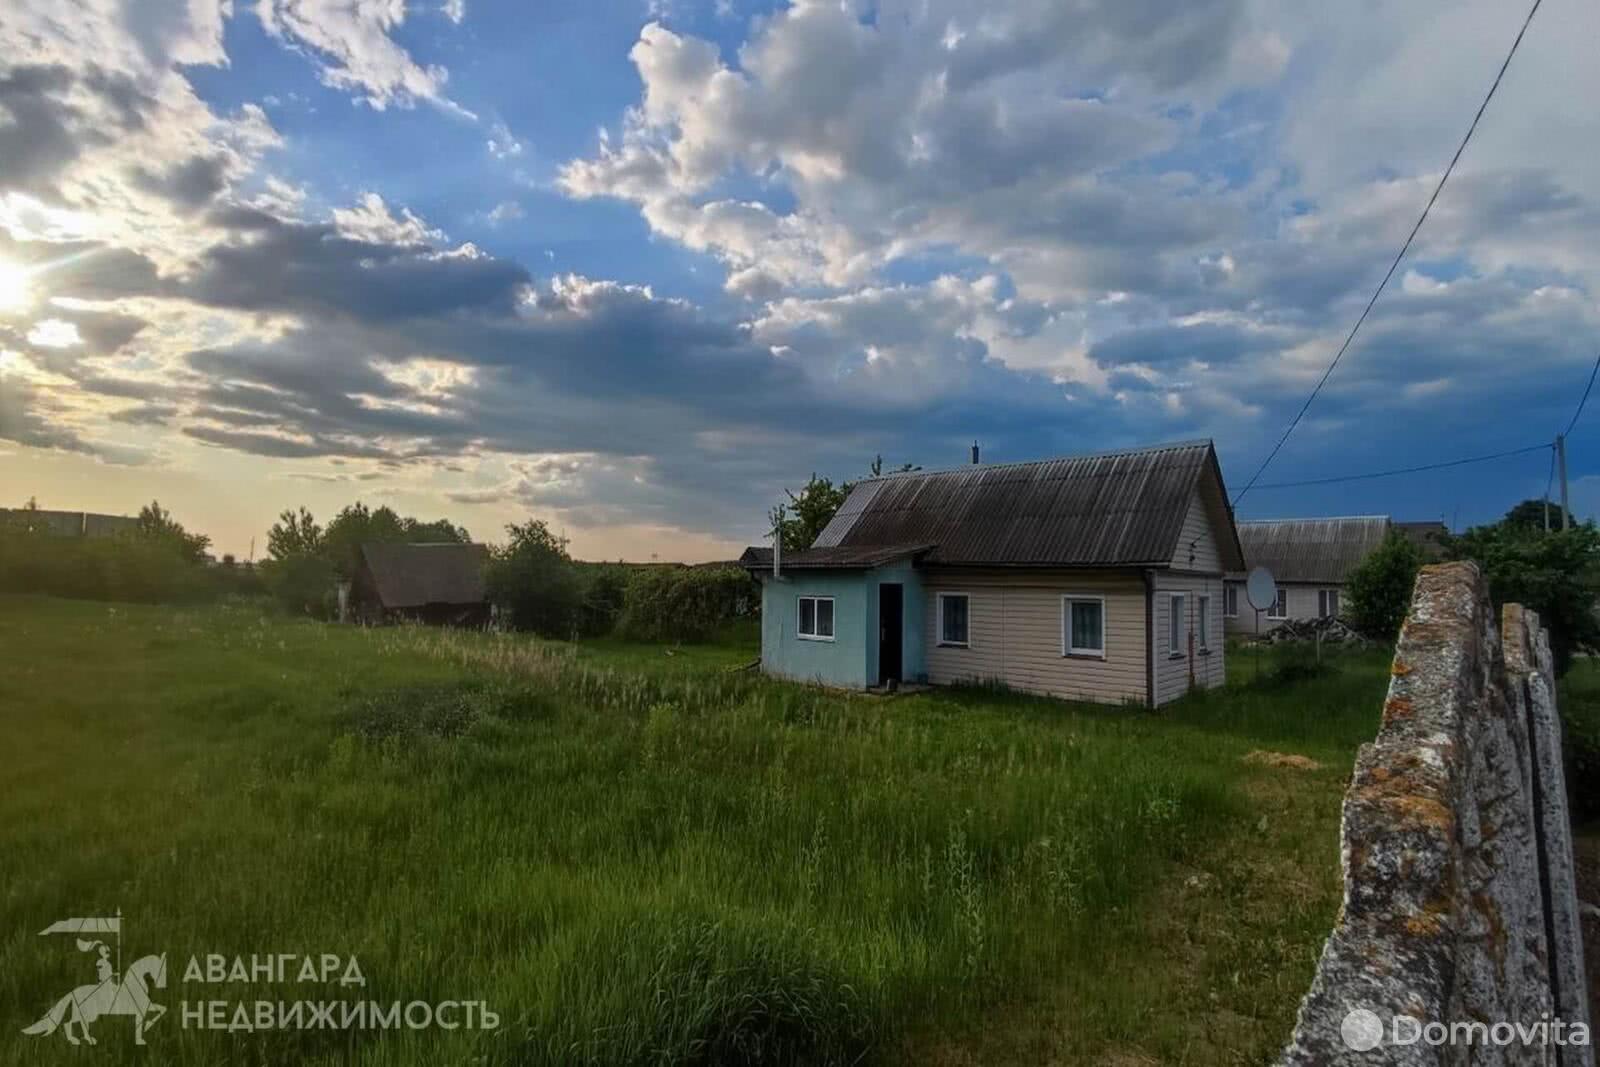 Продать 2-этажный дом в Заямном, Минская область ул. Берегового, 21000USD, код 636677 - фото 3